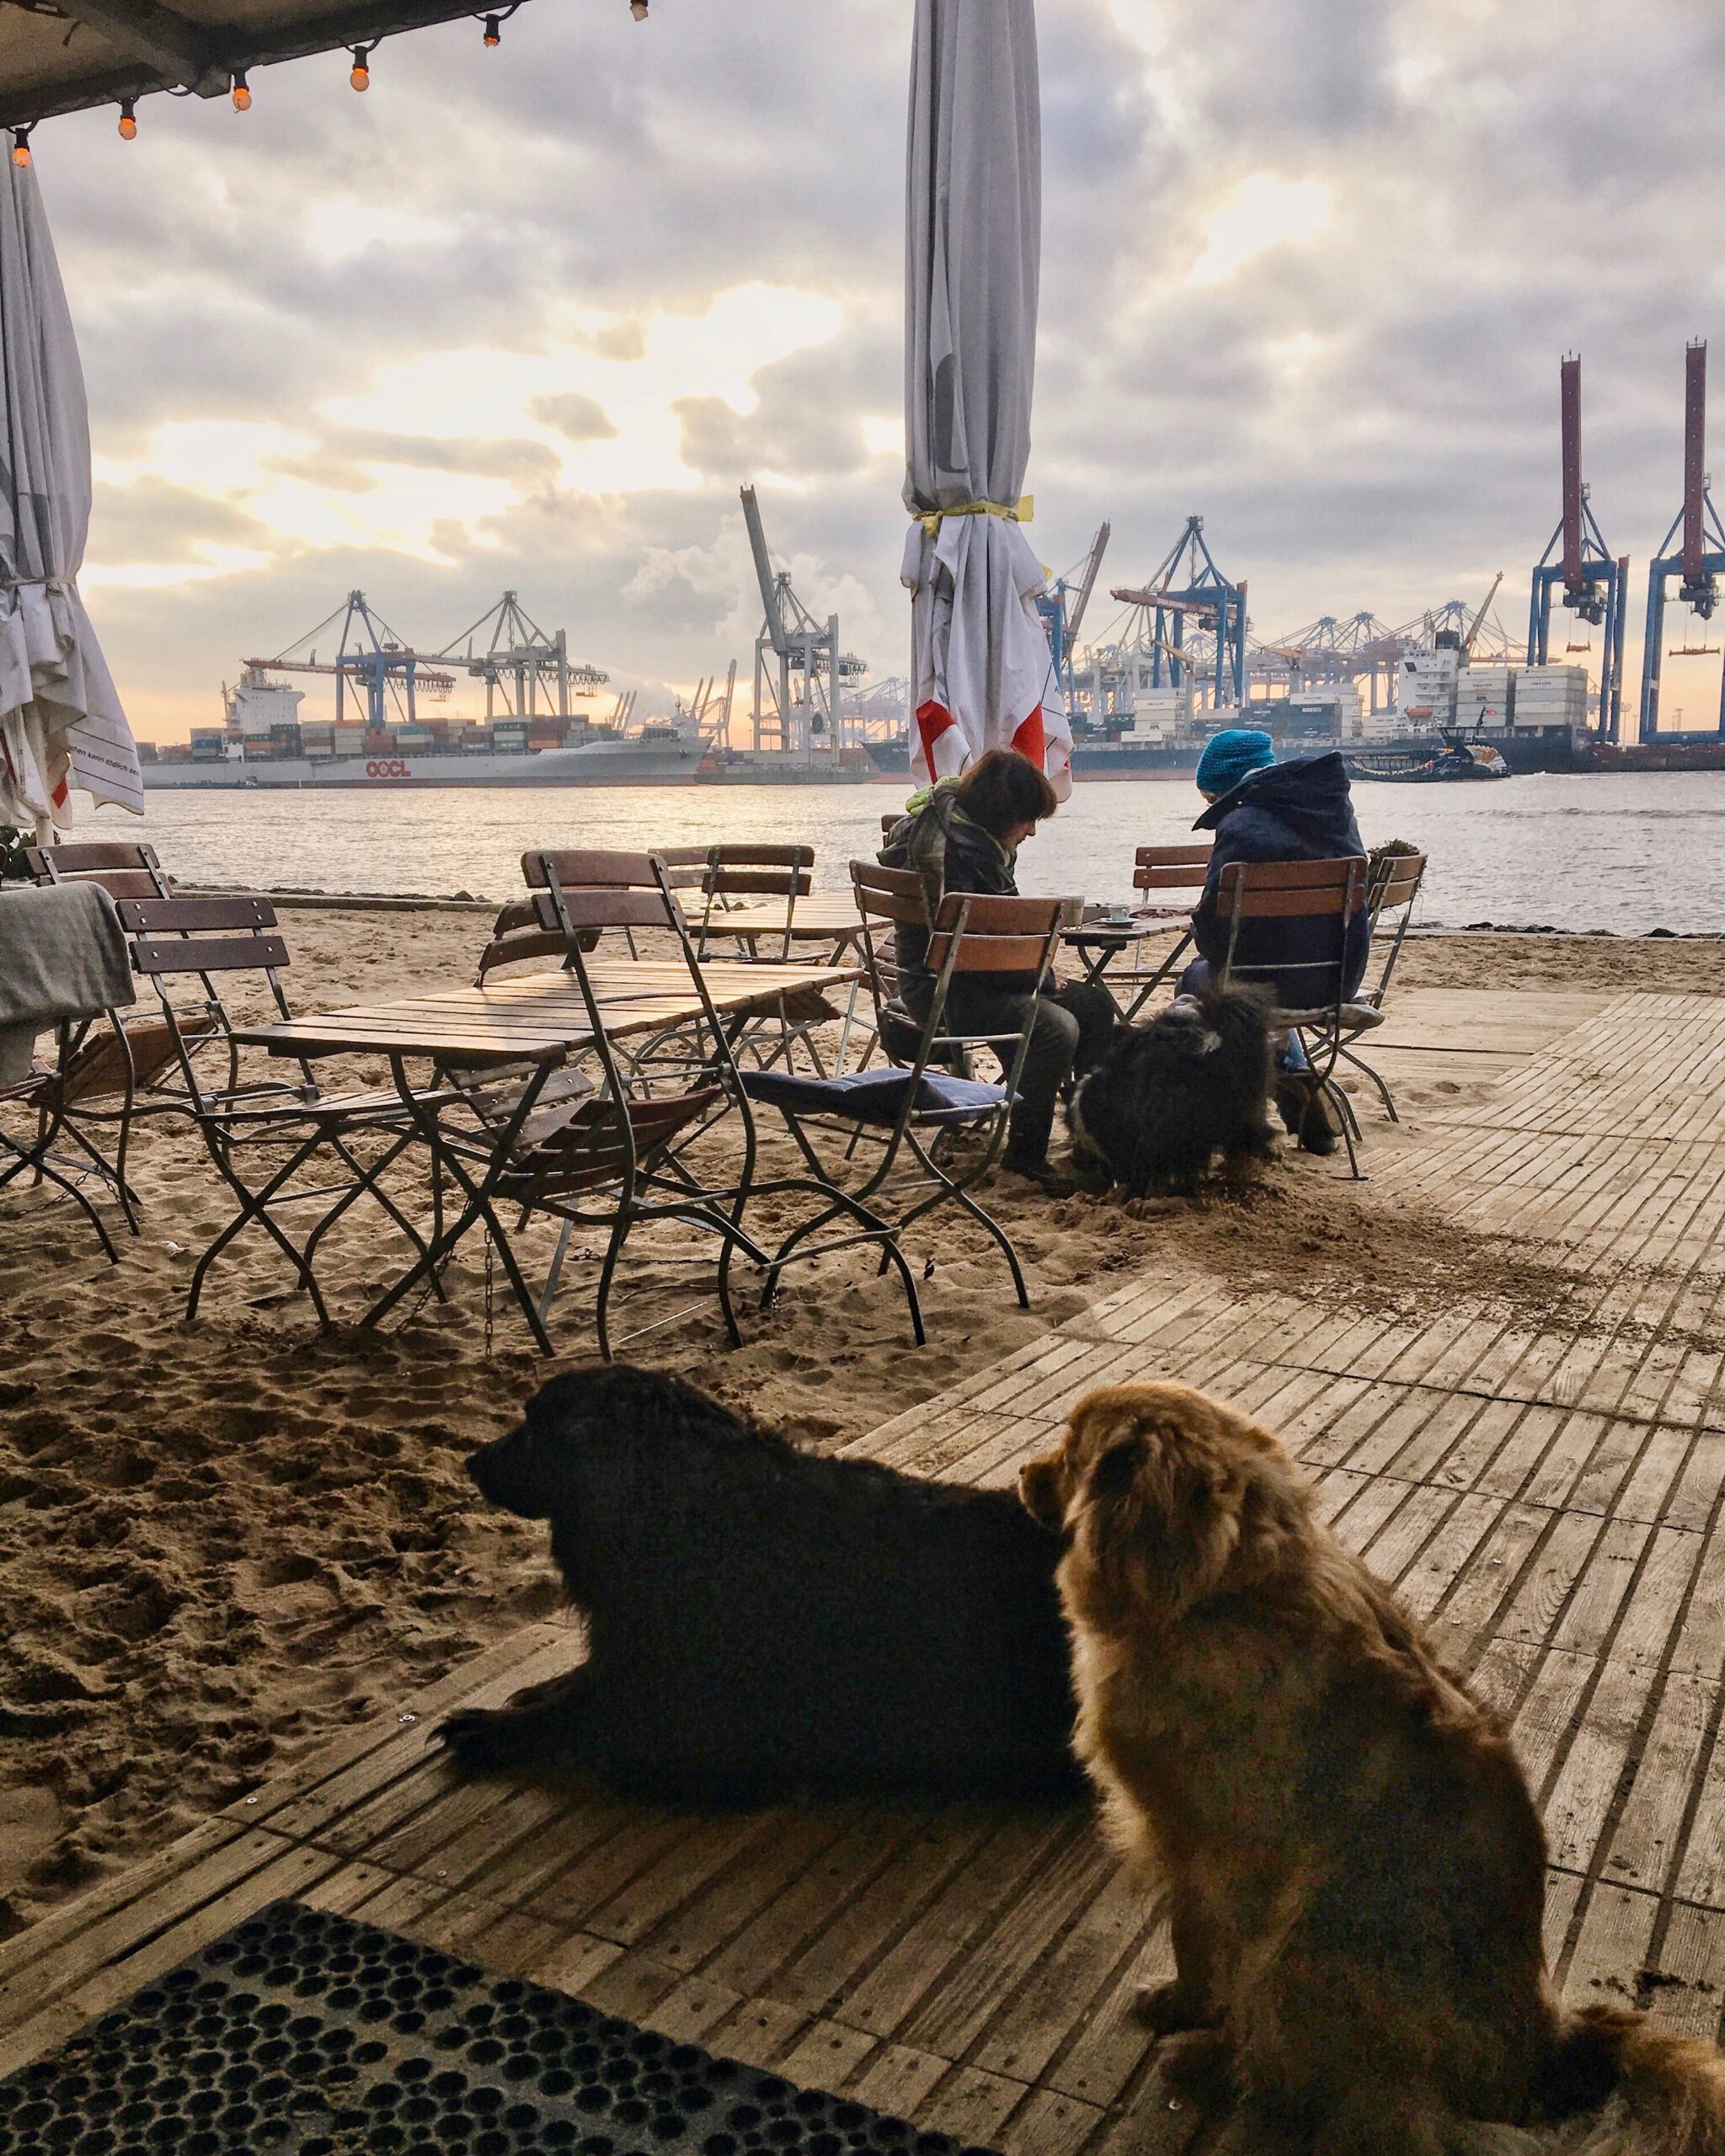 Location-Tipps für Hamburg im Winter: Strandperle und Strandkiosk in Övelgönne am Elbstrand